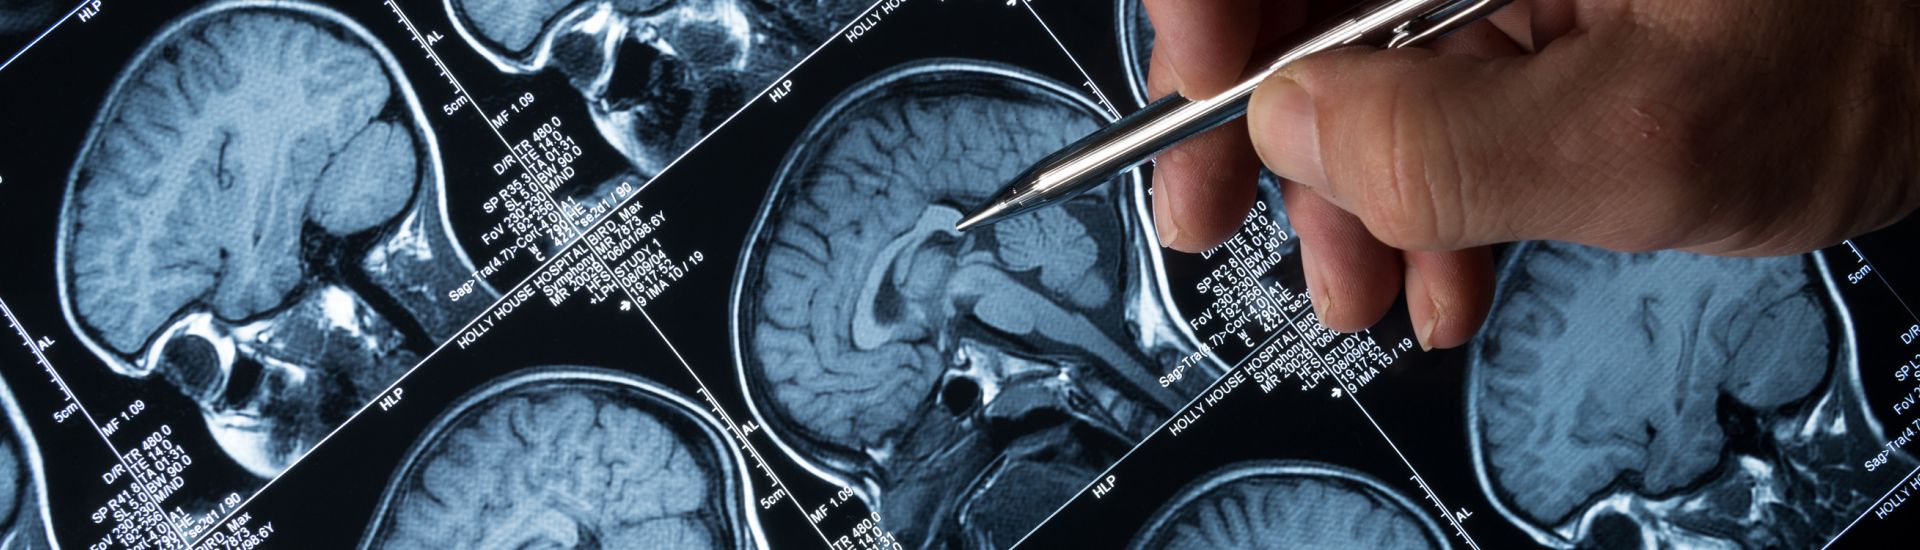 MRI brain images